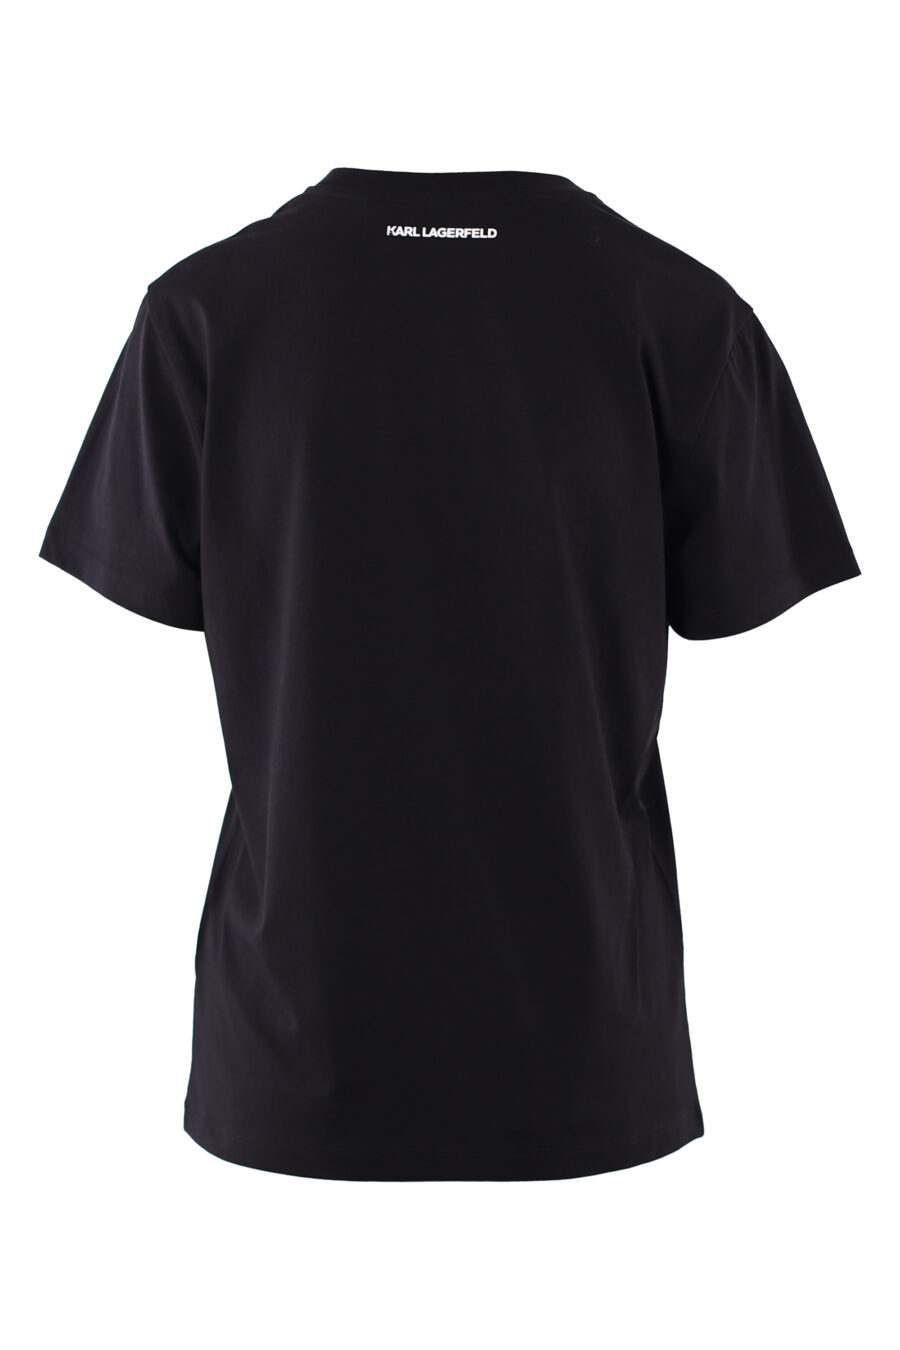 Schwarzes T-Shirt mit quadratischem Monogramm-Logo - IMG 6132